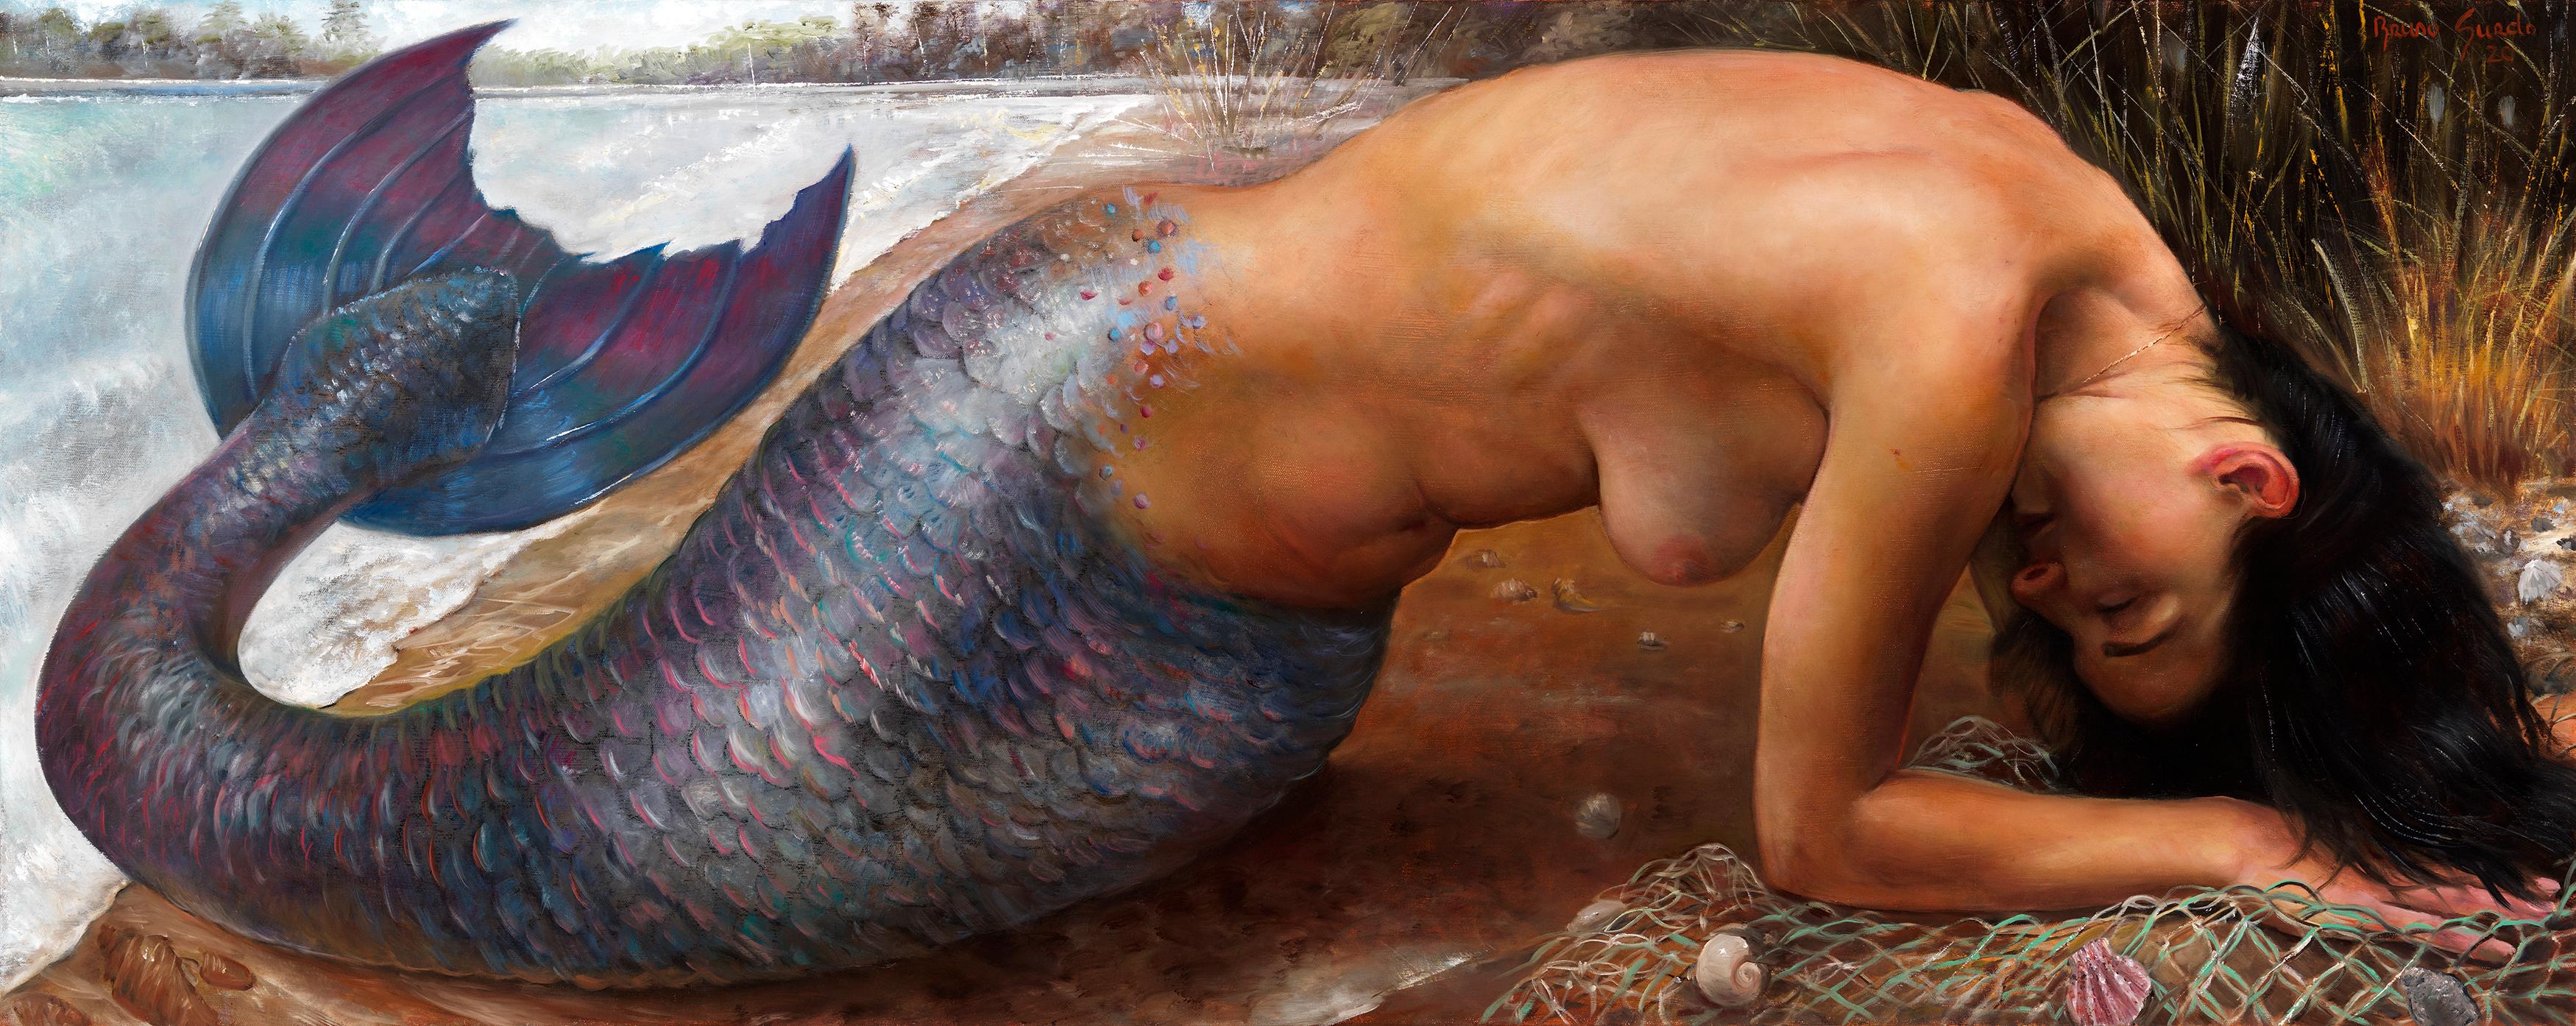 Submerged Mermaid - Dark Haired, Fair Skinned Mermaid Emerging From the Water